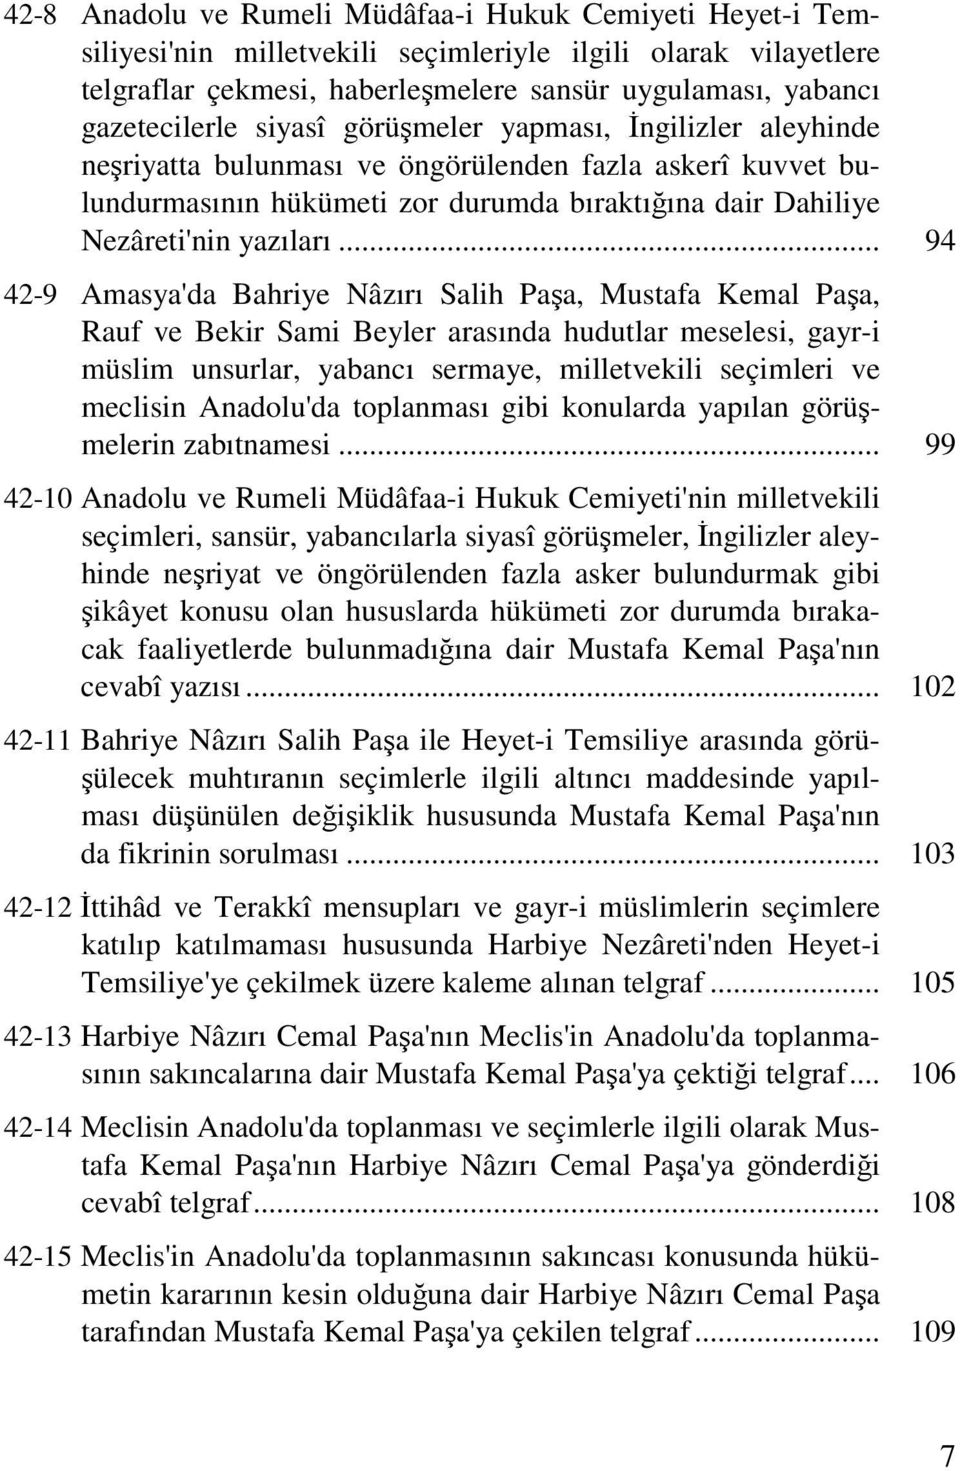 .. 94 42-9 Amasya'da Bahriye Nâzırı Salih Paşa, Mustafa Kemal Paşa, Rauf ve Bekir Sami Beyler arasında hudutlar meselesi, gayr-i müslim unsurlar, yabancı sermaye, milletvekili seçimleri ve meclisin